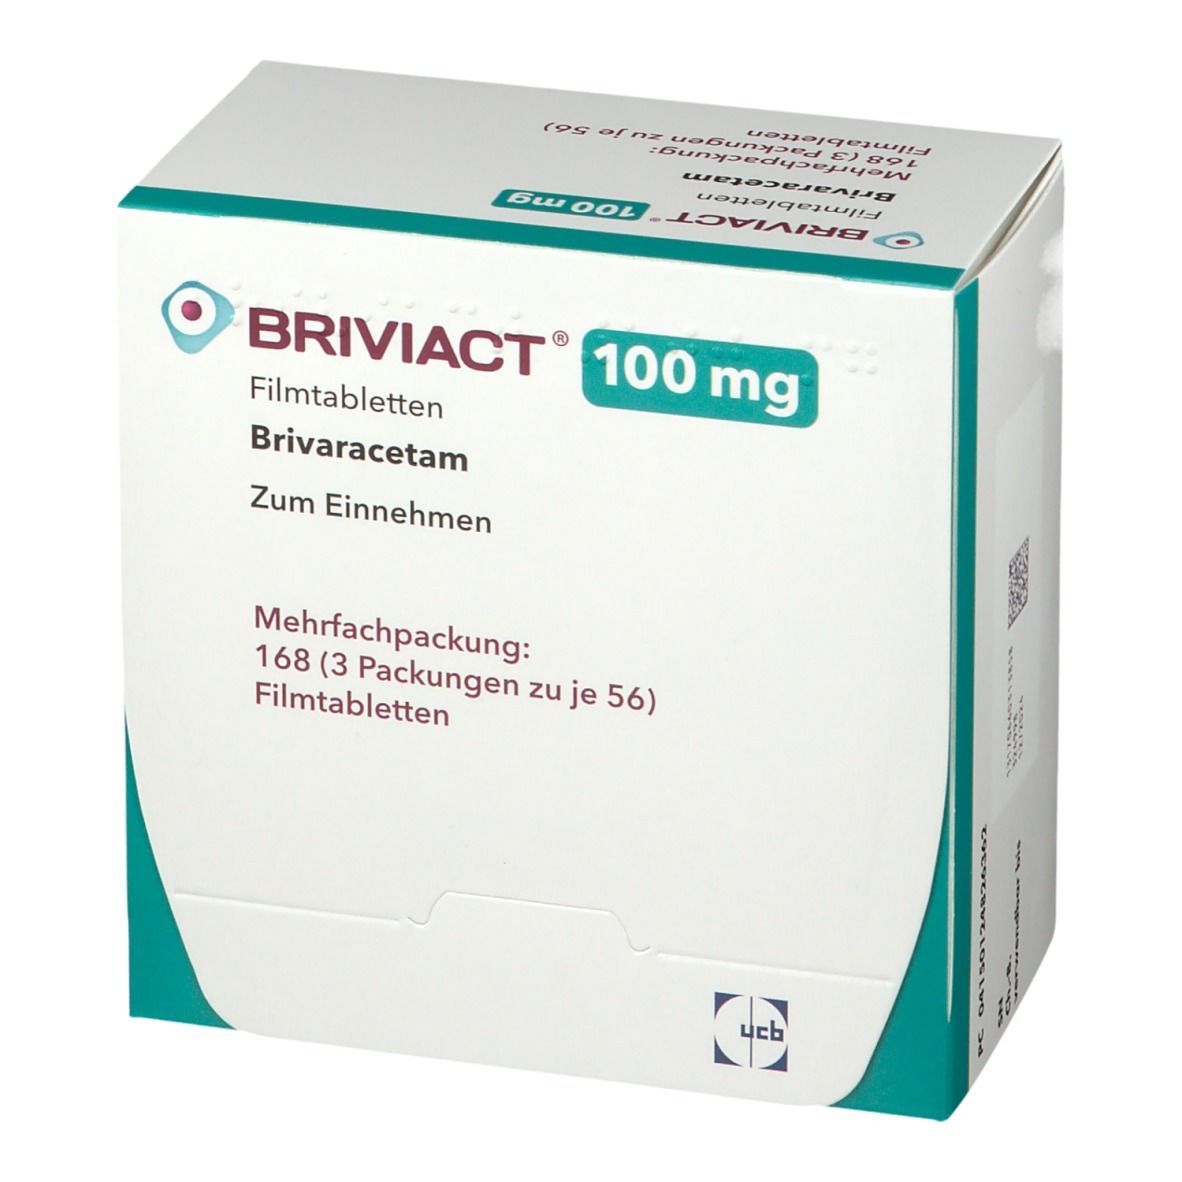 BRIVIACT® 100 mg